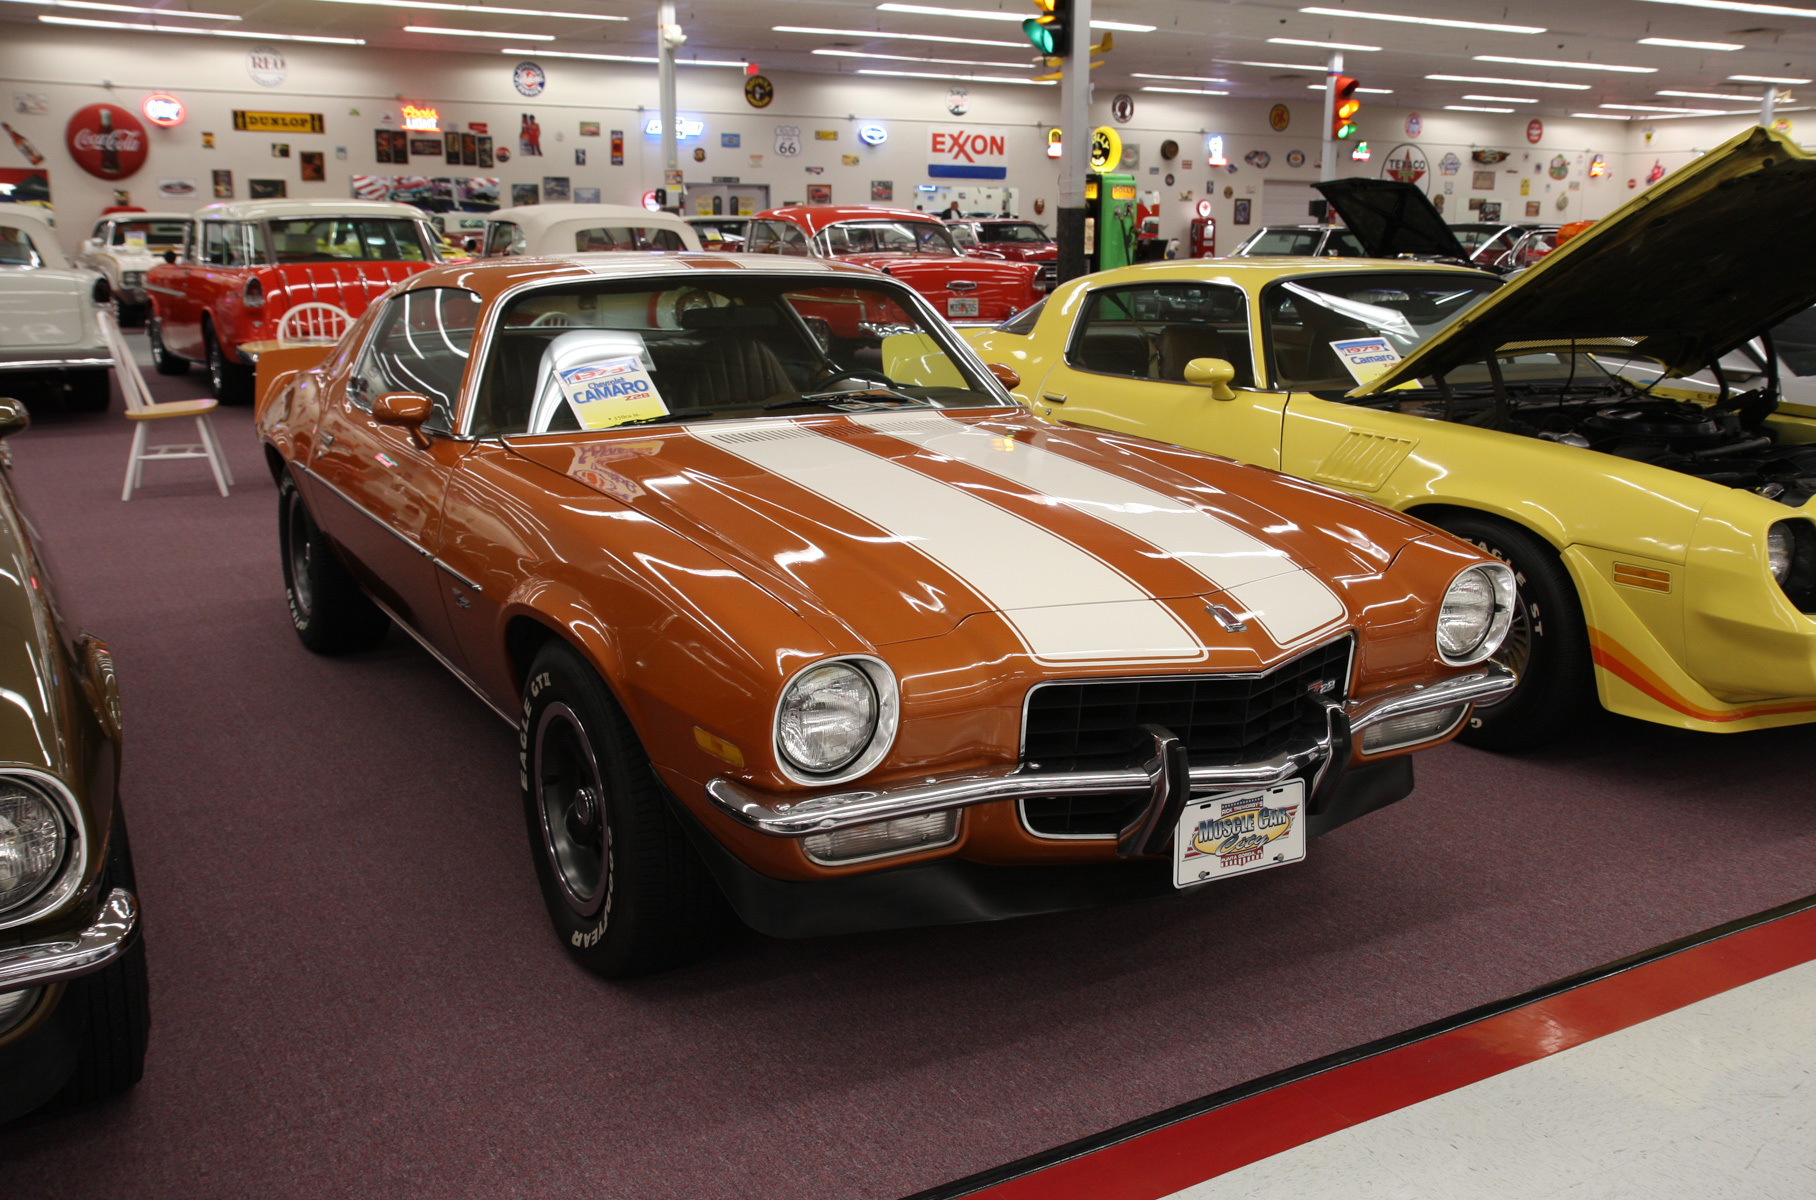 В США продают целый музей автомобилей. Посмотрите на его коллекцию